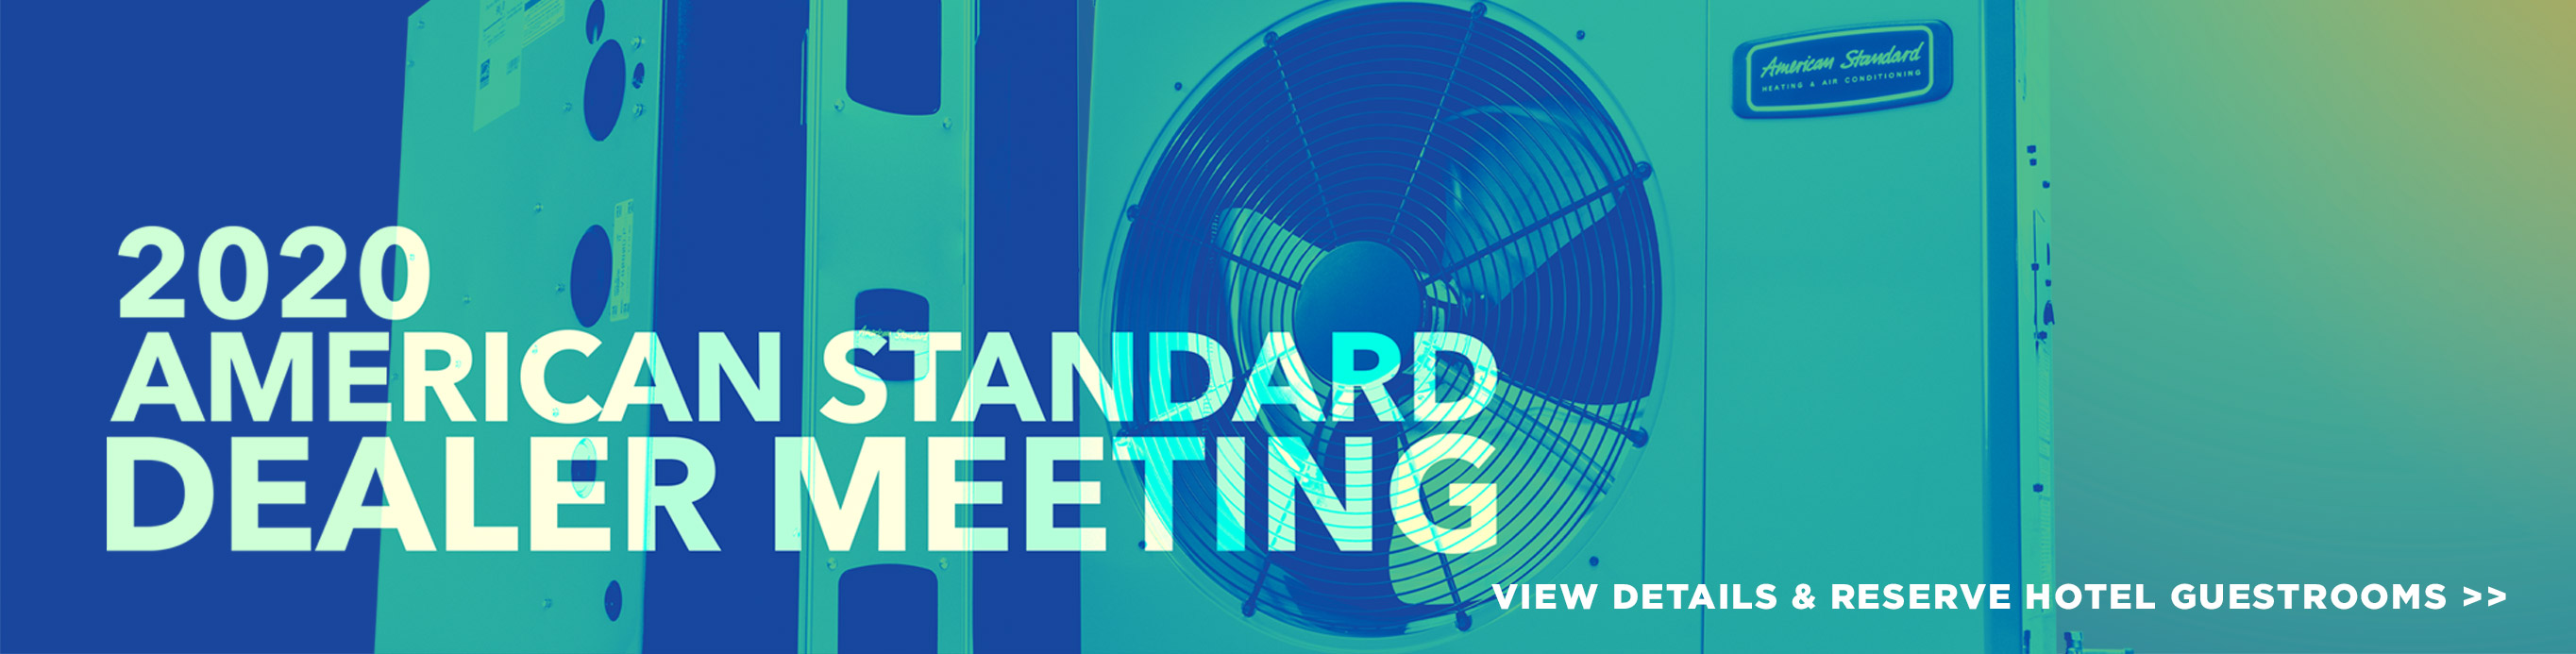 2020-american-standard-dealer-meeting-vendor-registration